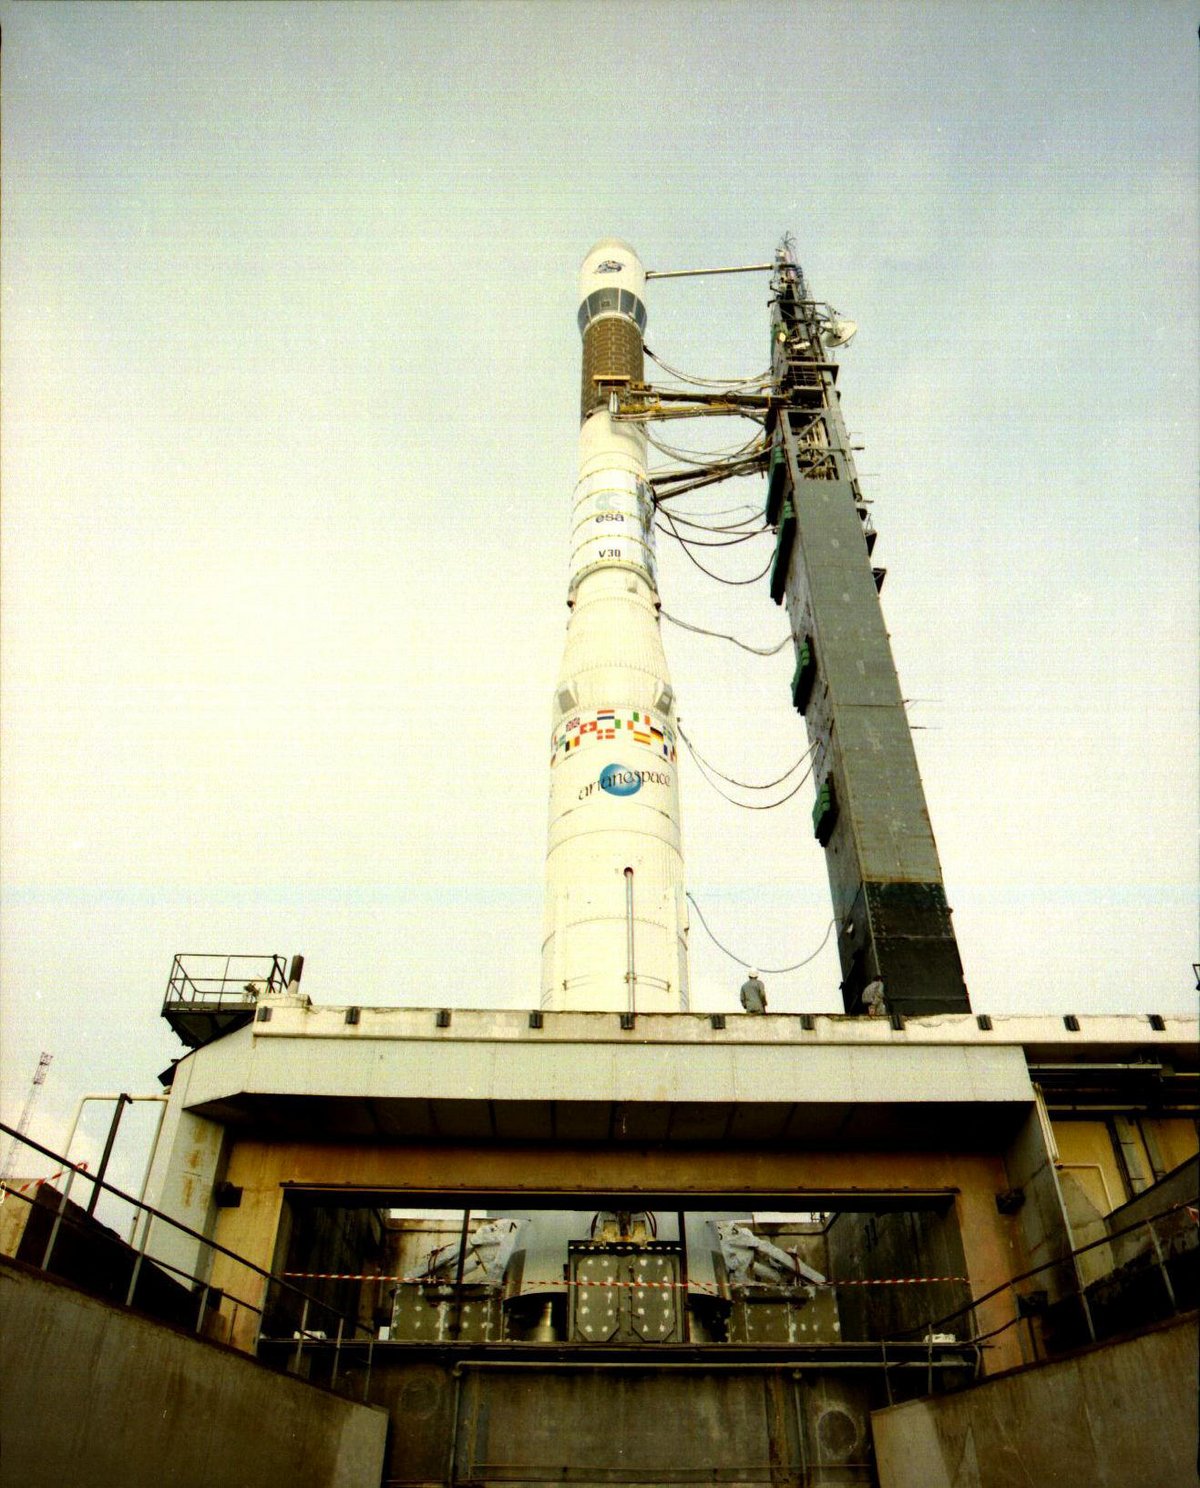 Ariane 2 avant son lancement. Succédant à Ariane 1, ce petit lanceur aura eu la plus courte carrière de toutes les fusées Ariane. Mais, avec Ariane 3, il aura permis de renforcer la base industrielle et de développer les technologies indispensables au développement d'Ariane 4. Crédit: Arianespace